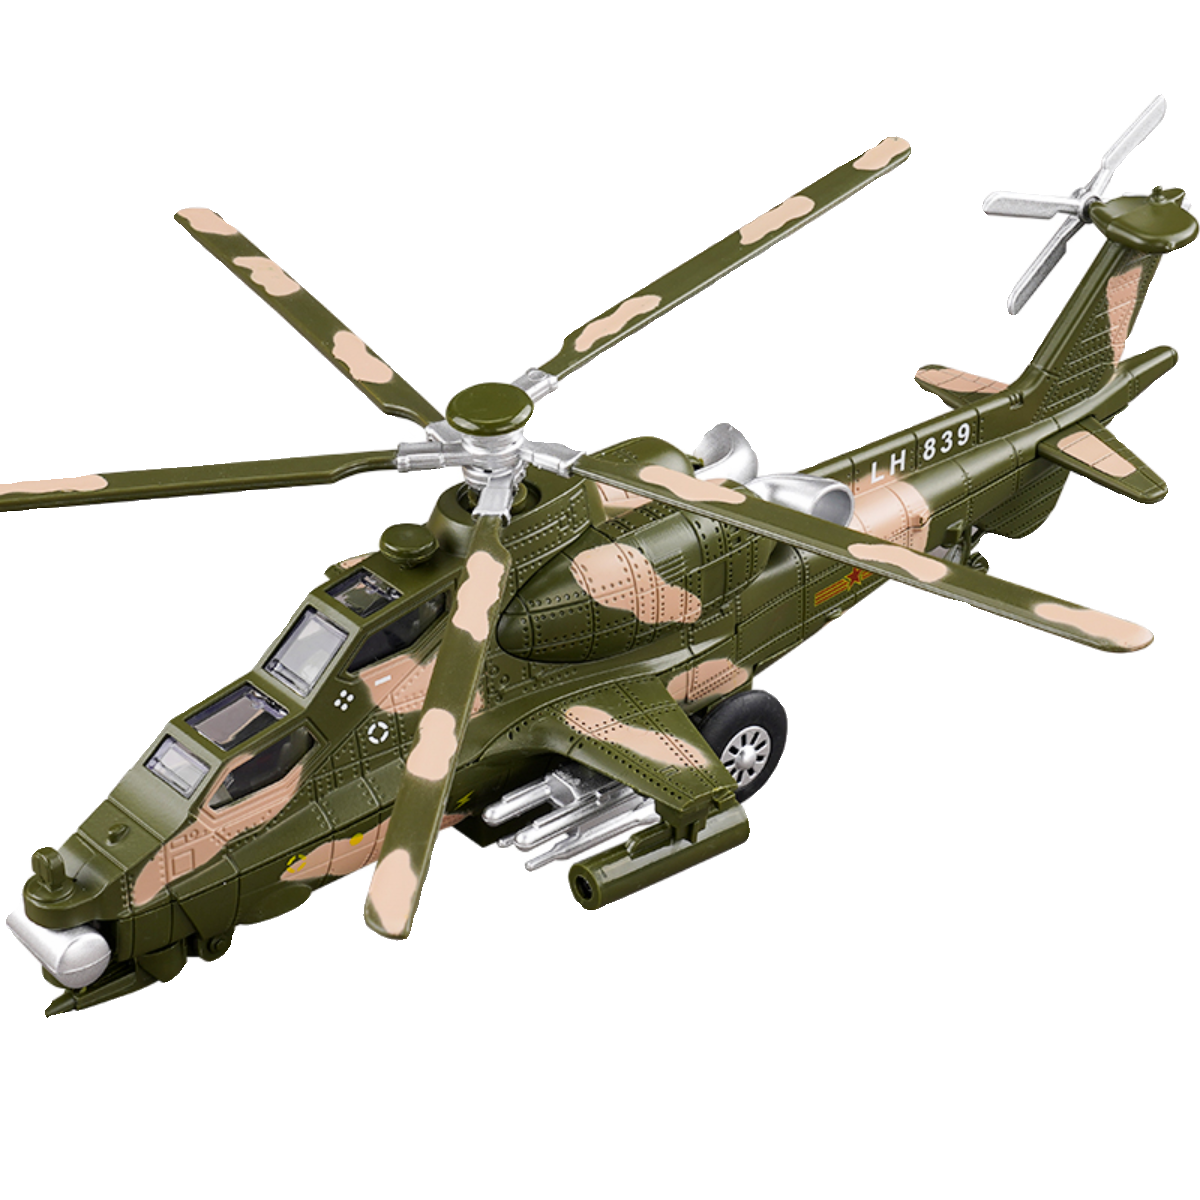 合金武装直升飞机玩具武直十飞机模型仿真军事战斗机摆件礼物男孩